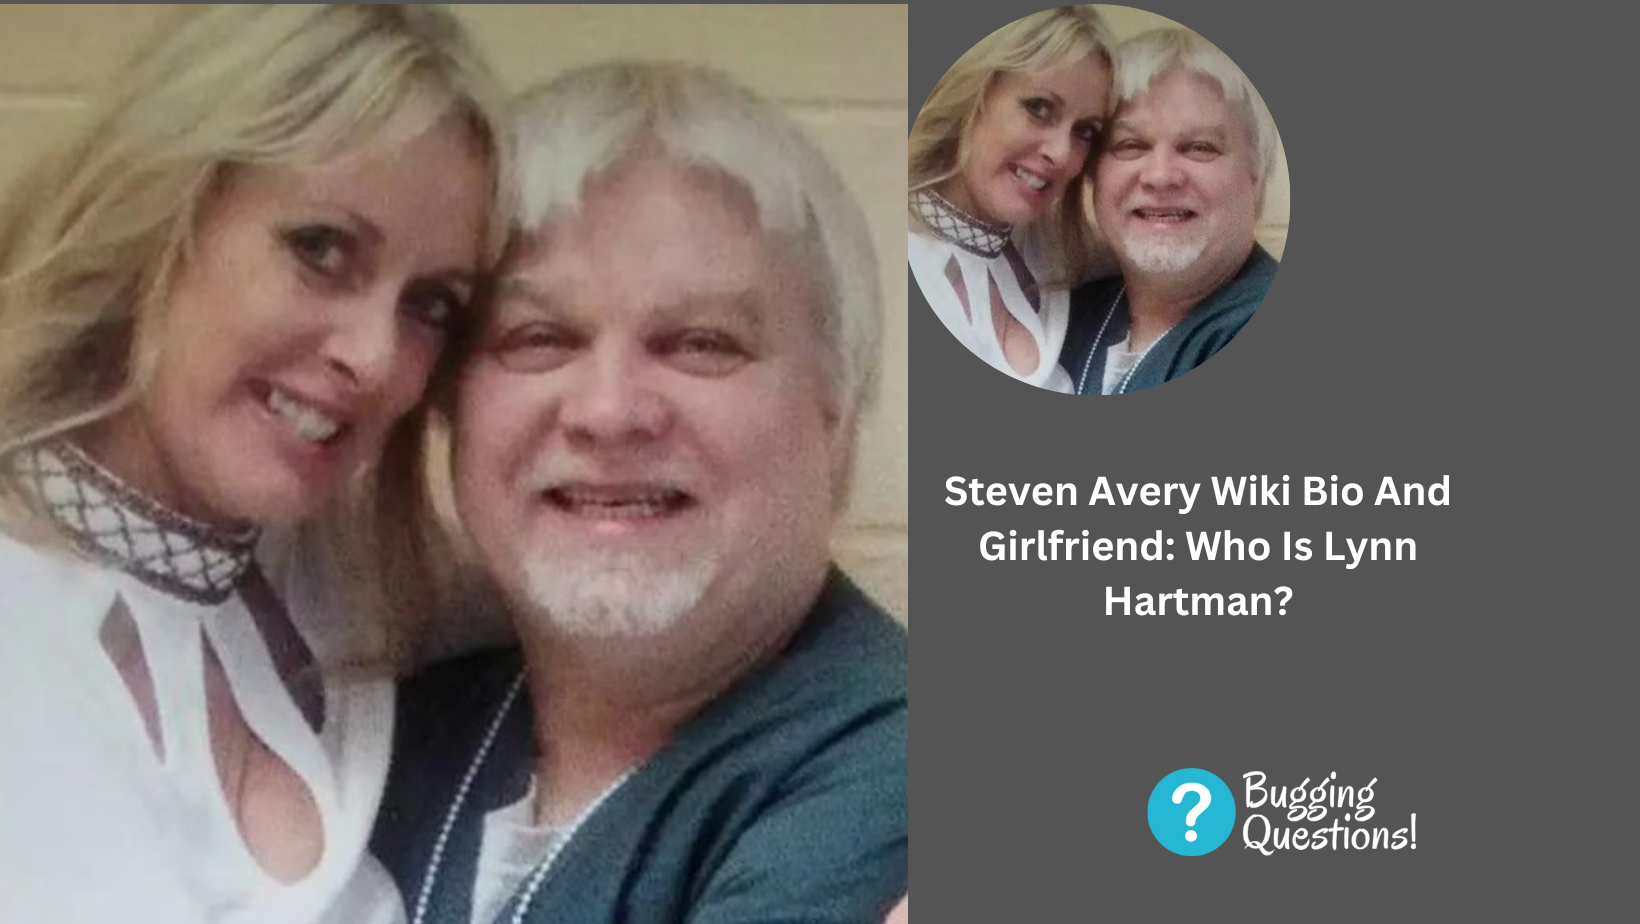 Steven Avery Wiki Bio And Girlfriend: Who Is Lynn Hartman?